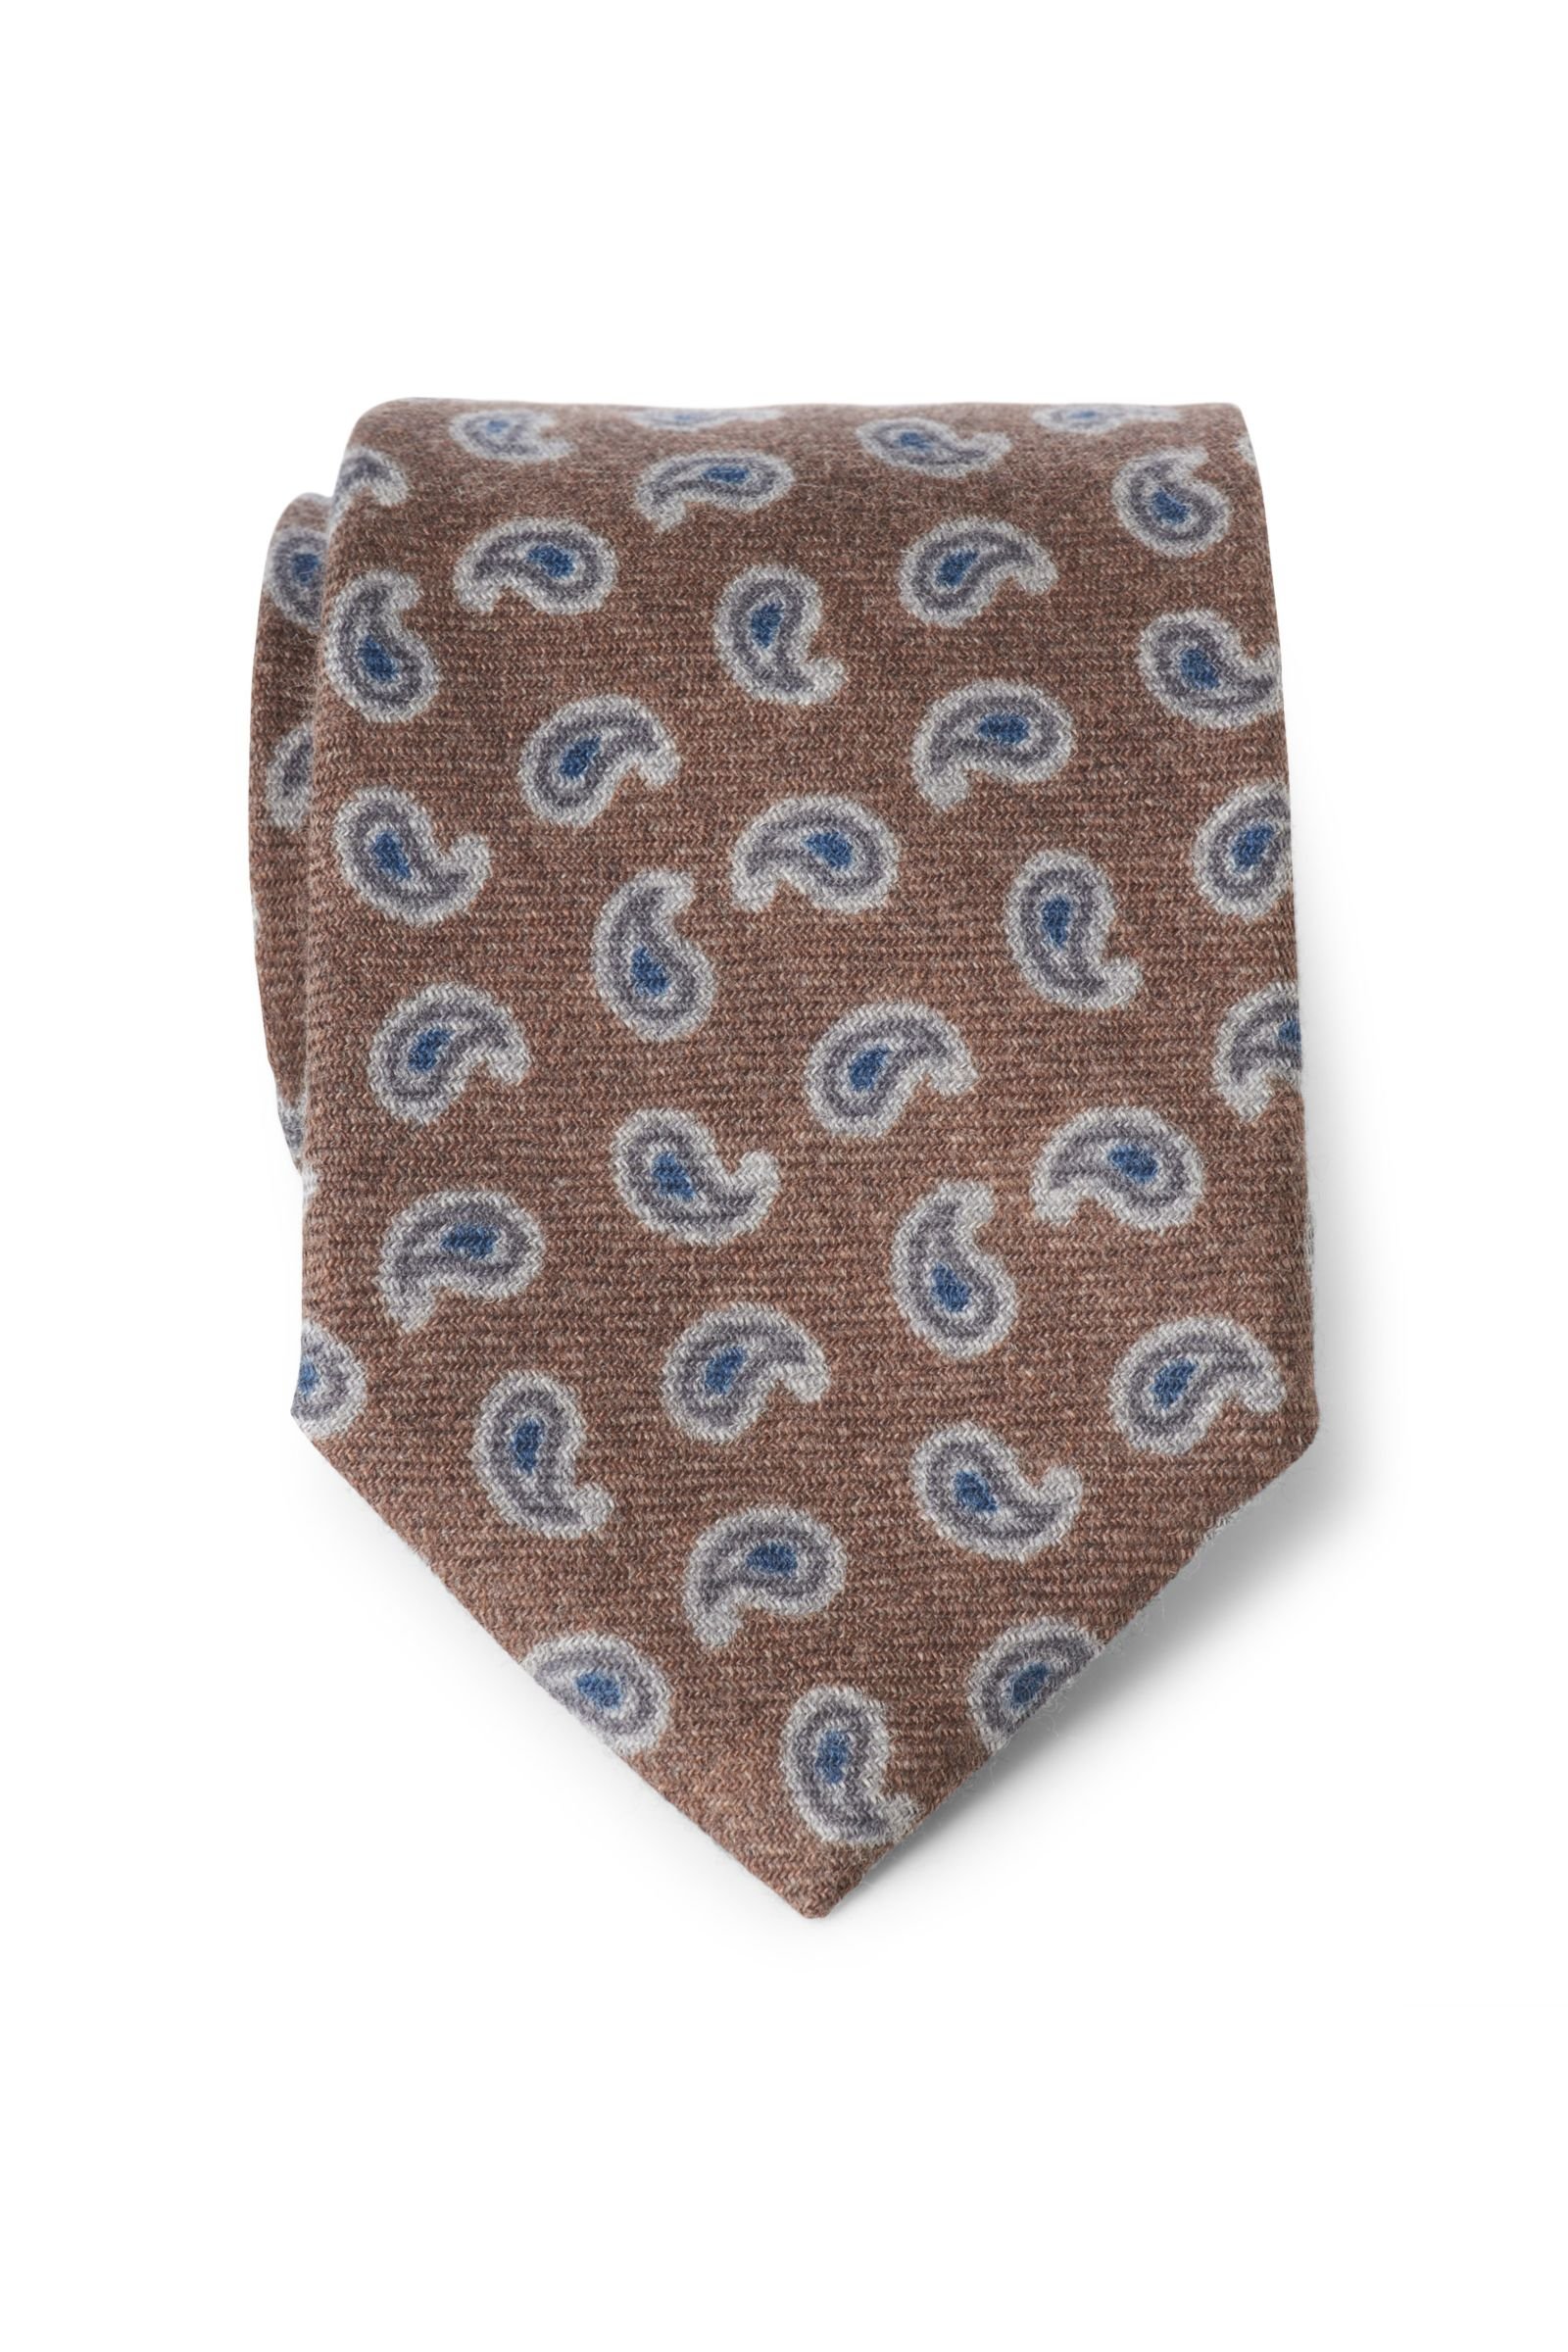 Wool tie brown patterned